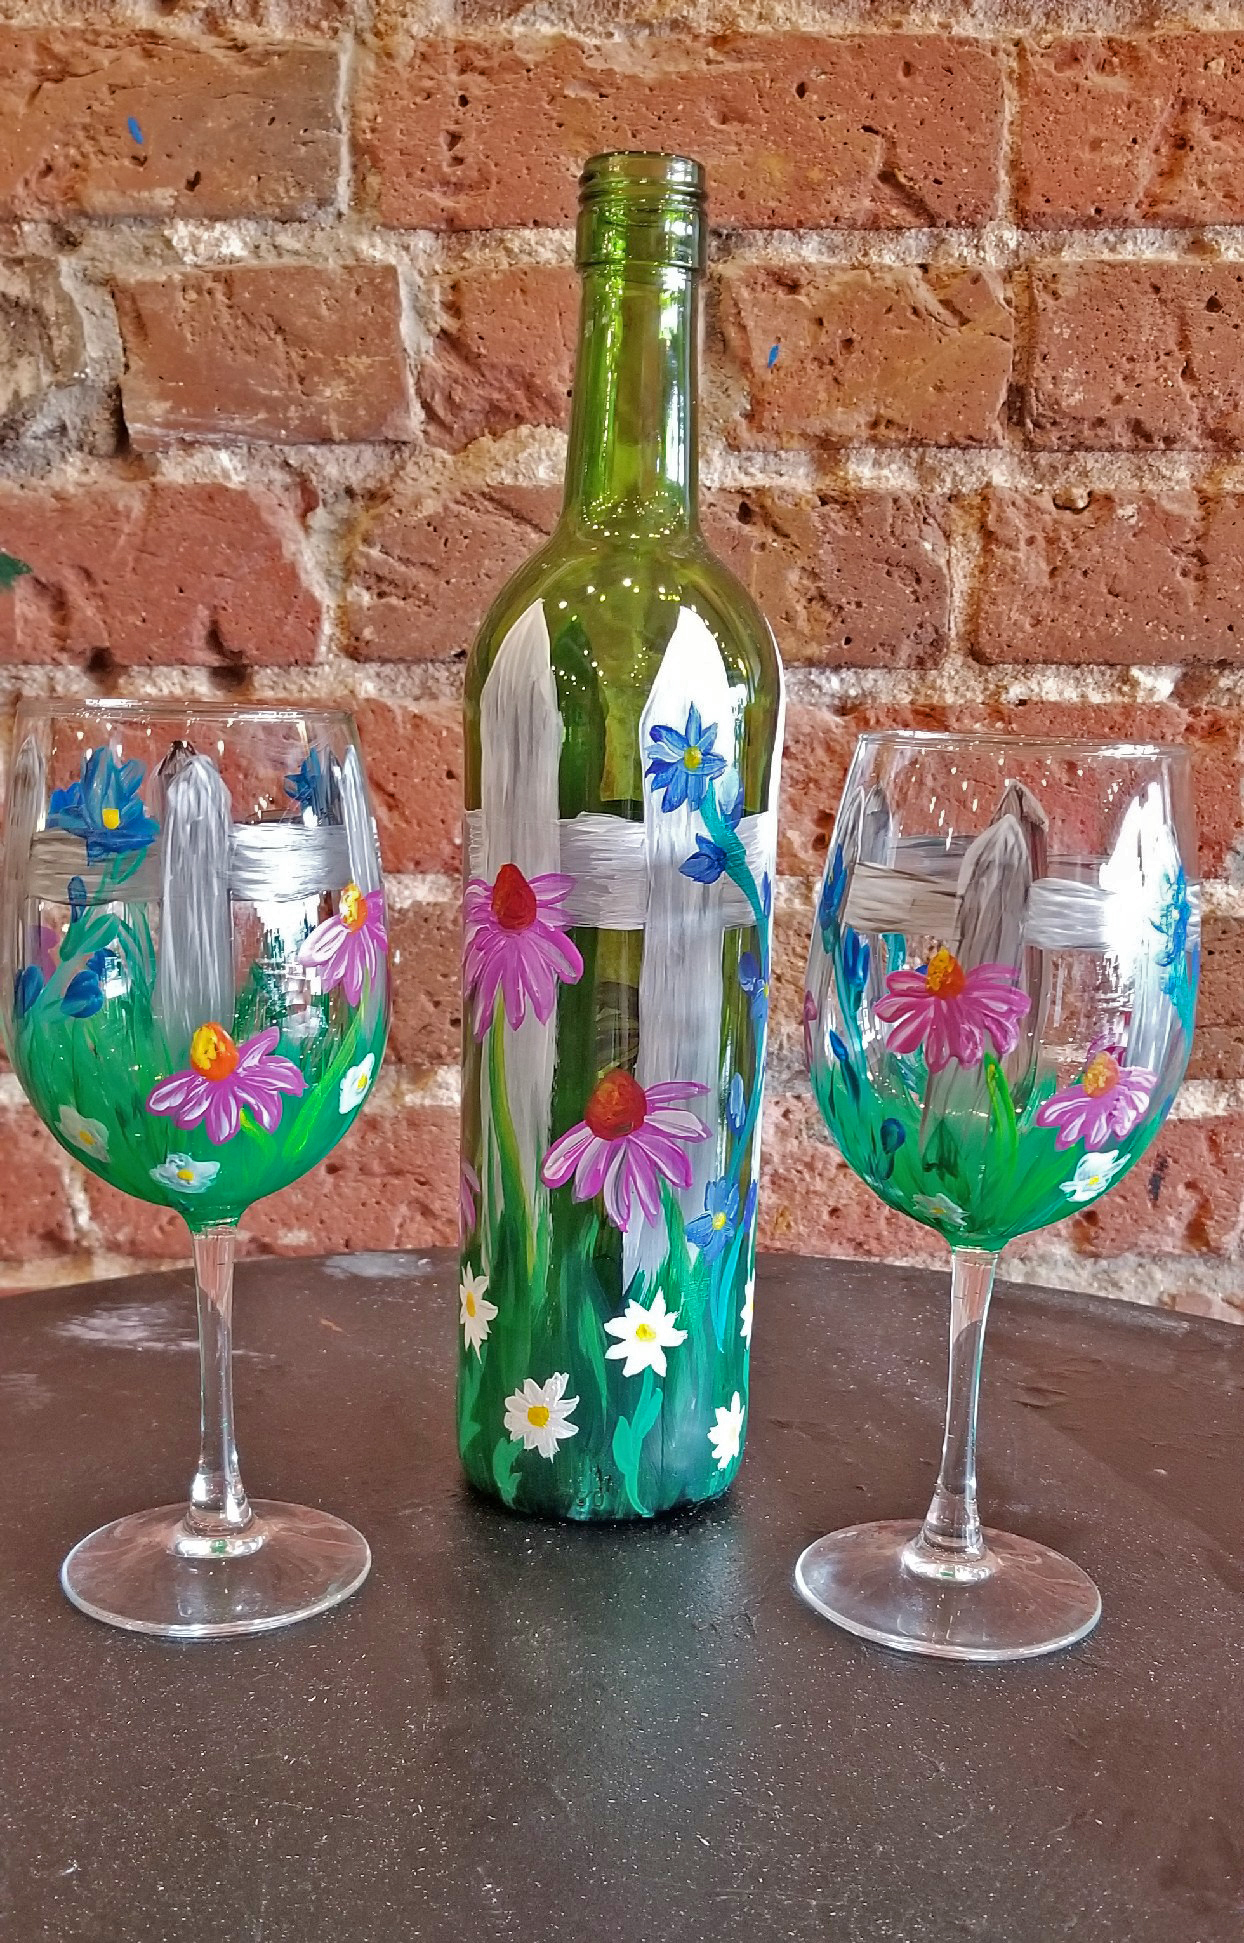 Wildflower Garden Wine Bottle